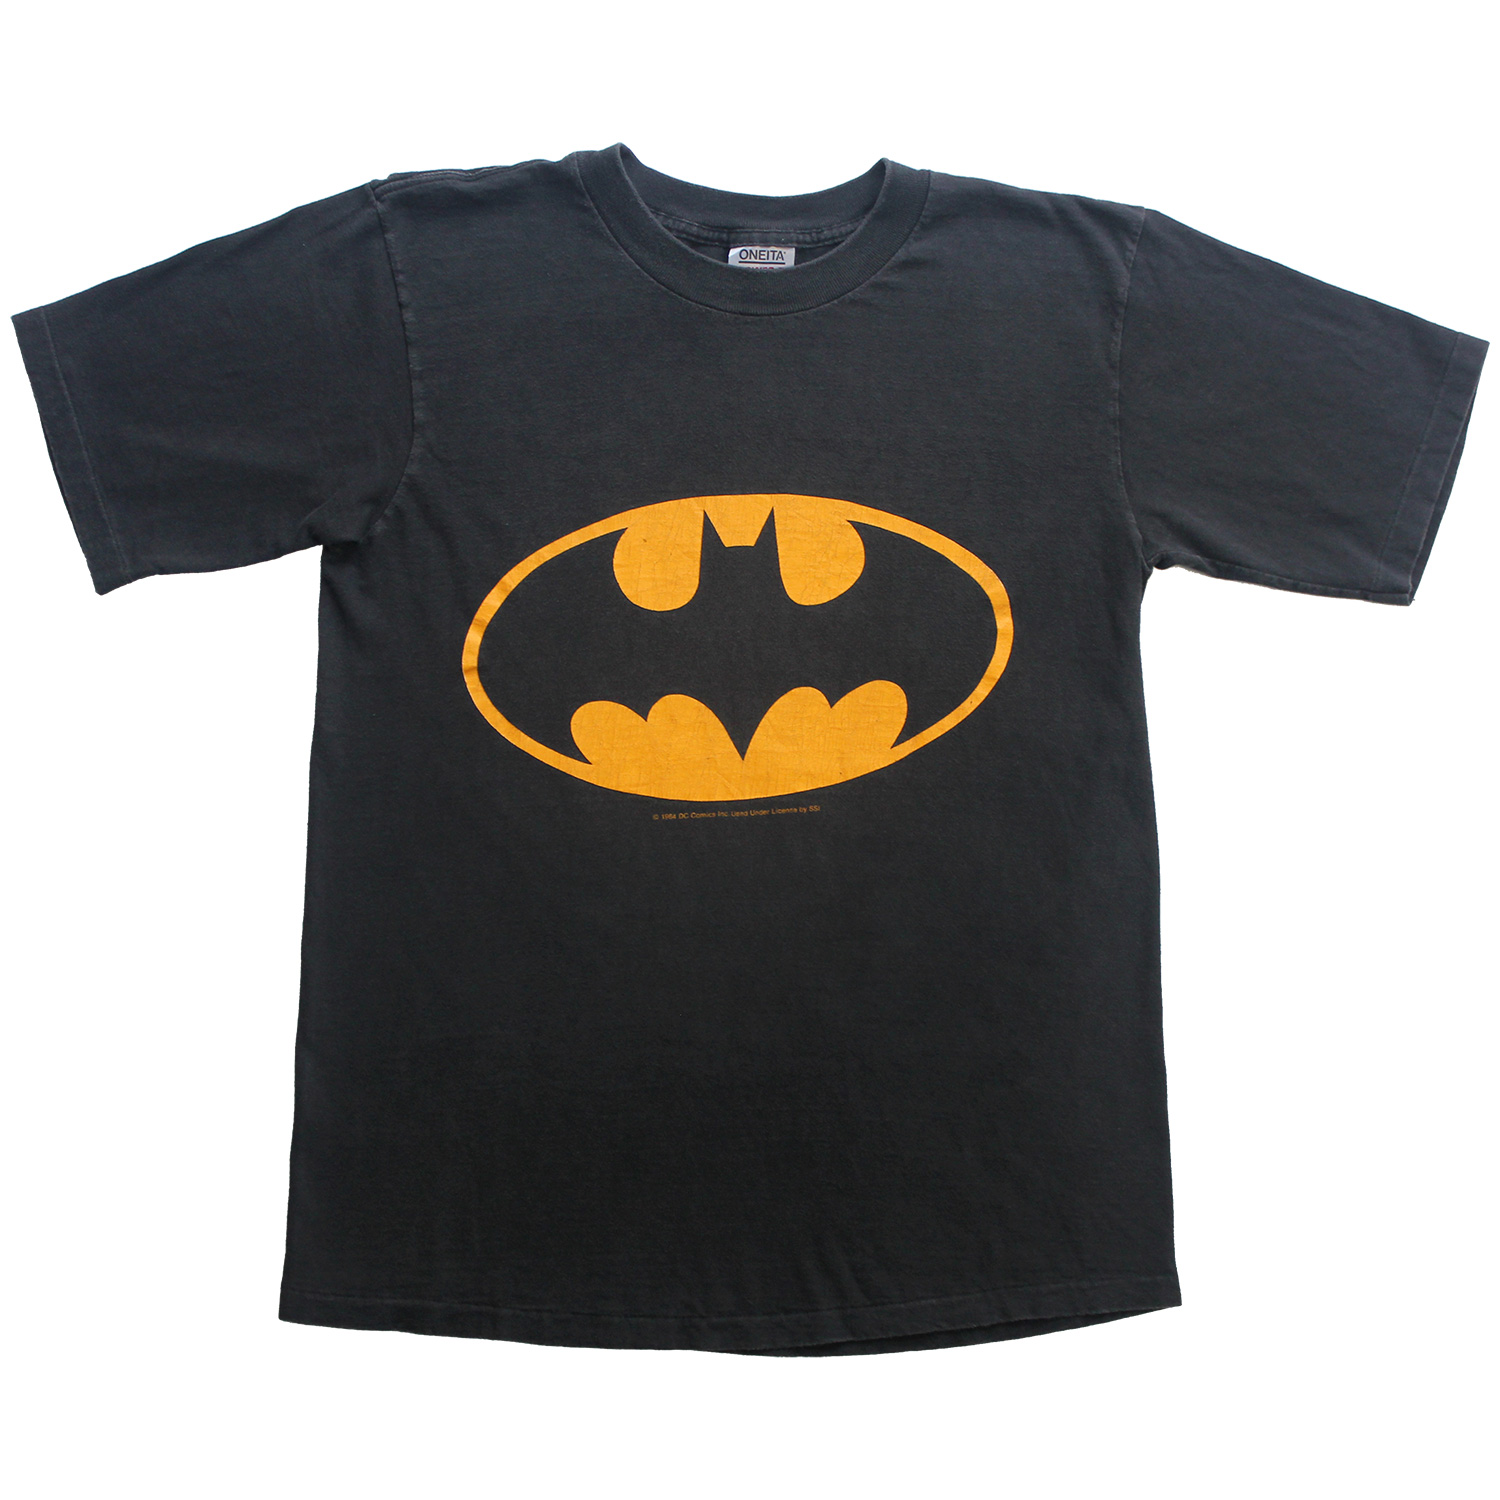 Vintage Batman Logo T-shirt, Front